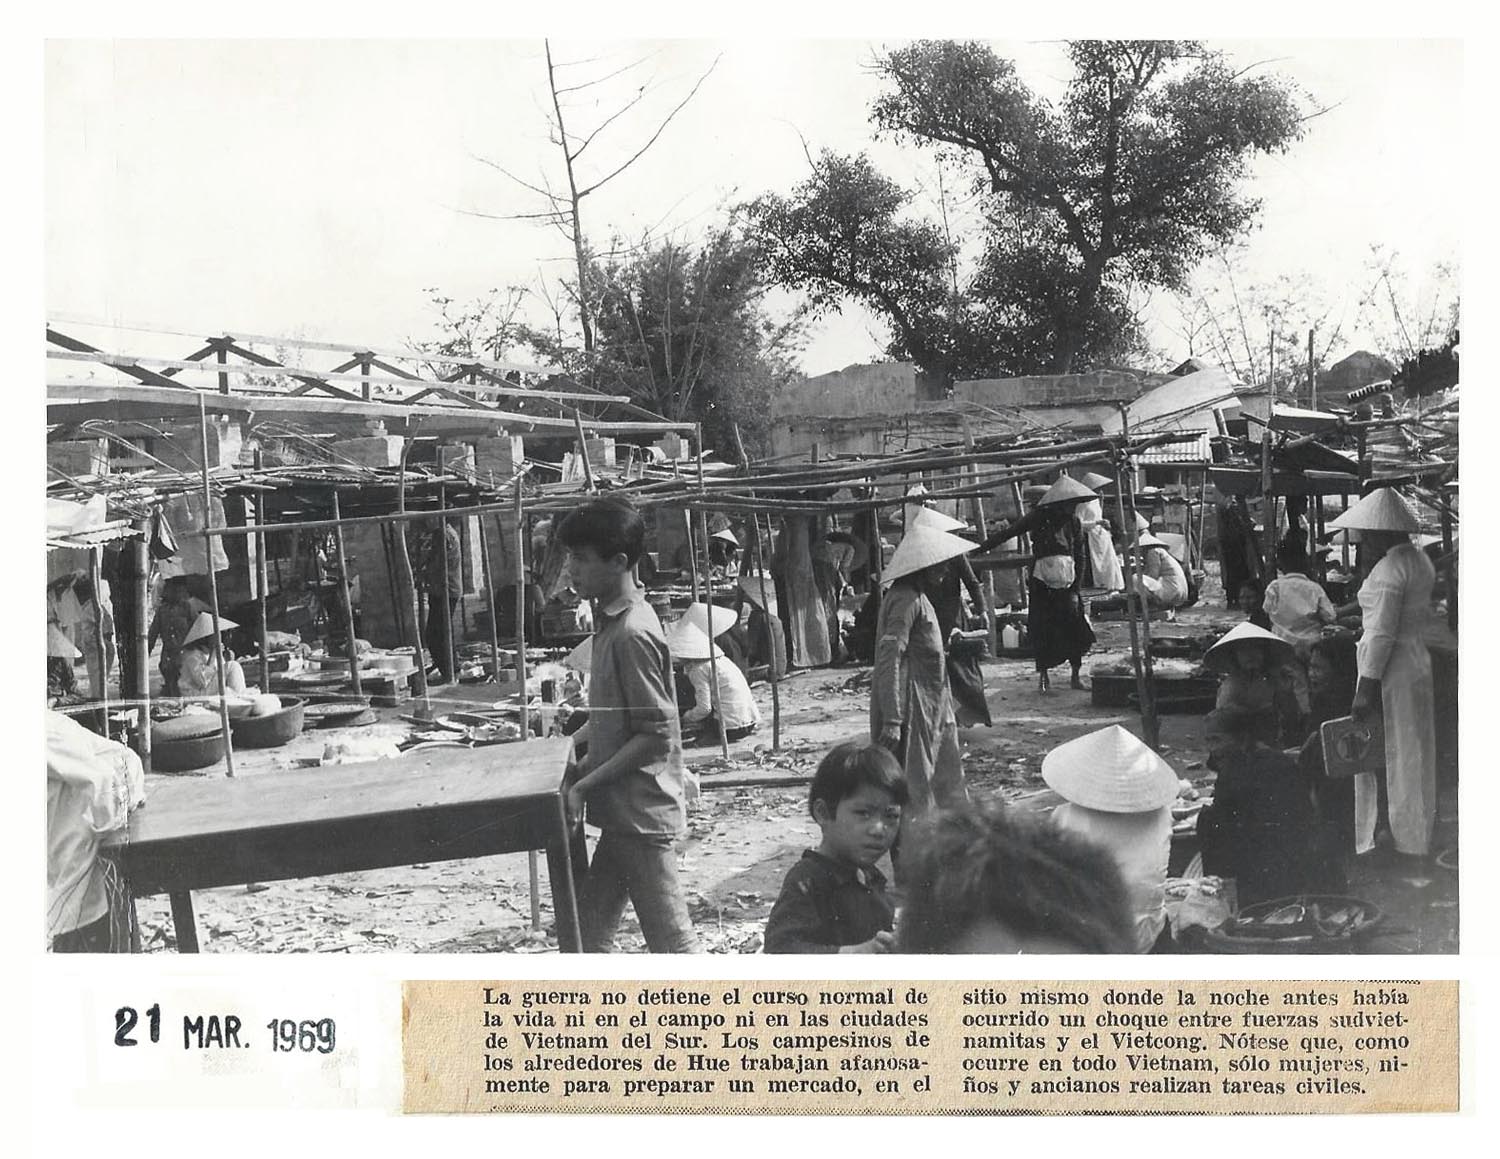 1969 vietnam war town market shopping at hue 14812291113 o